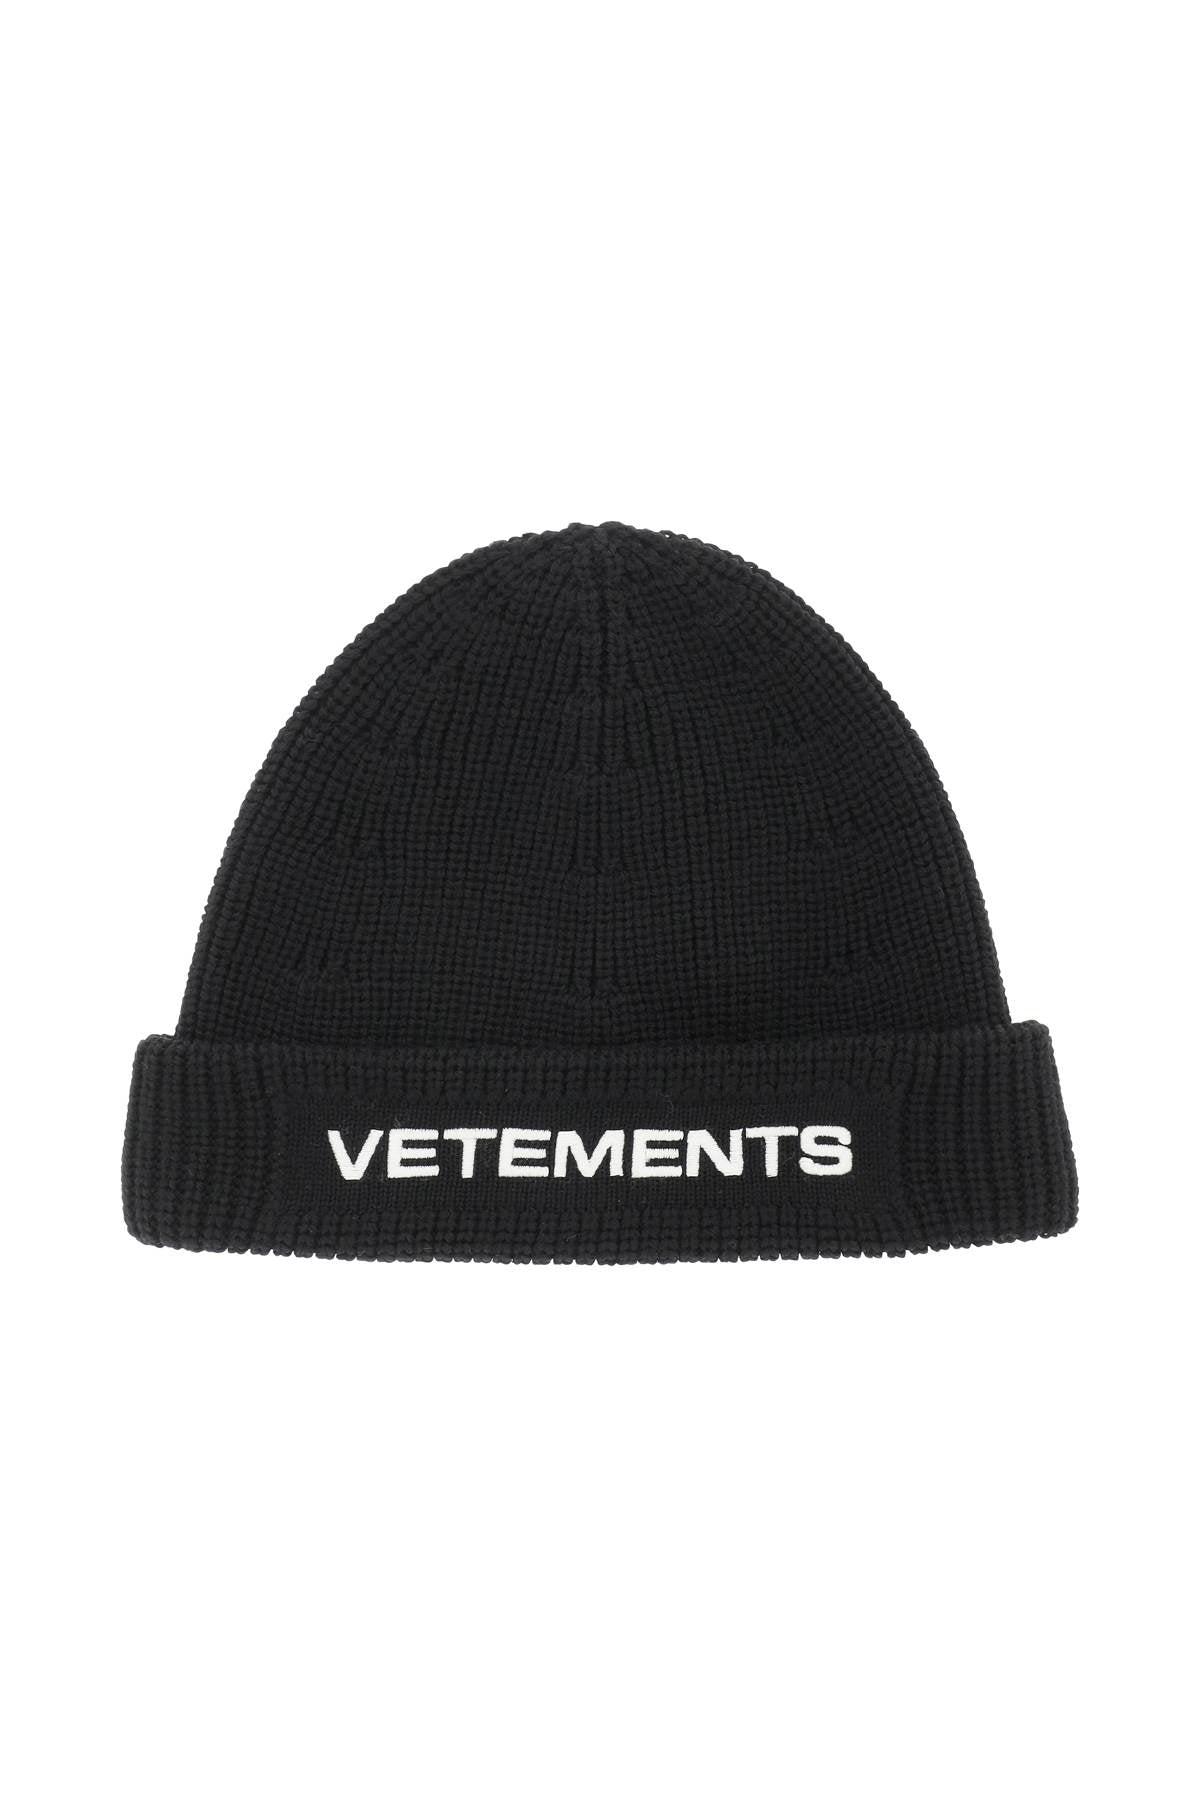 Vetements Wool Logo Beanie in Black for Men | Lyst